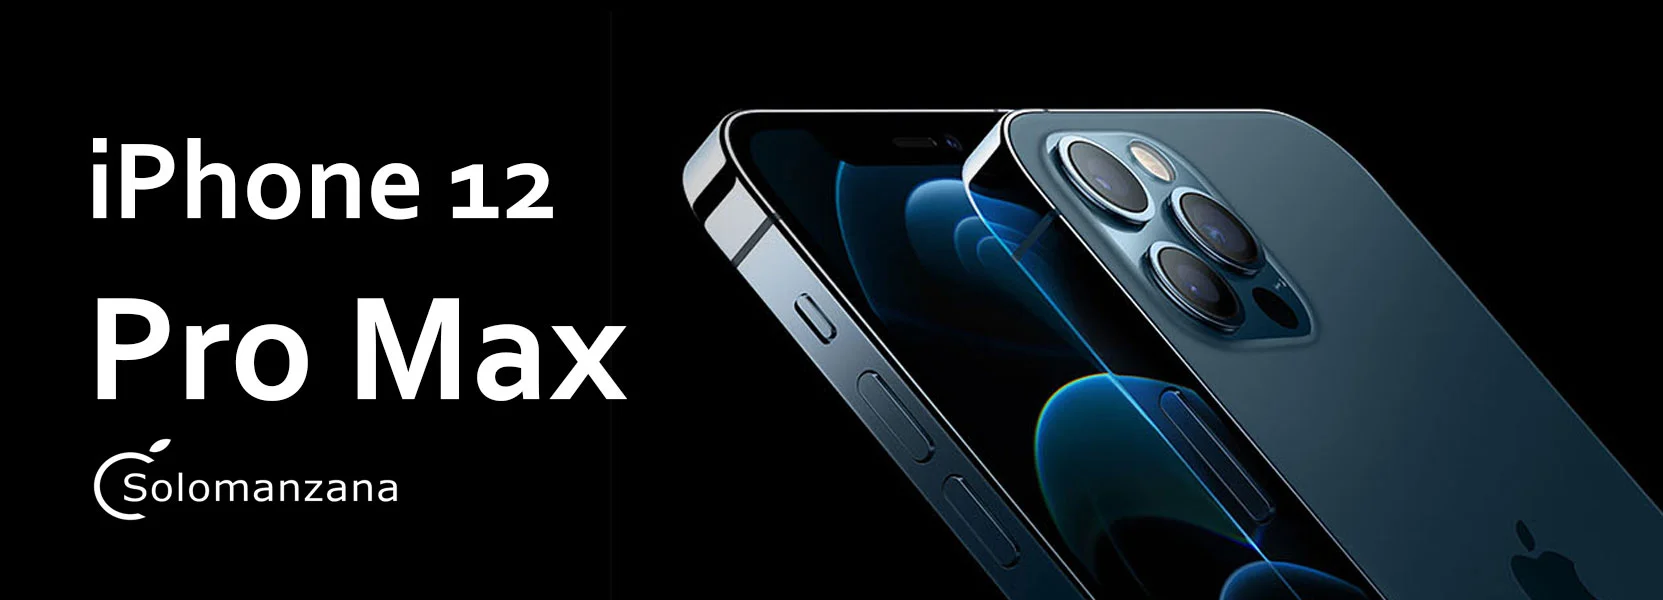 iPhone 12 Pro Max reacondicionado